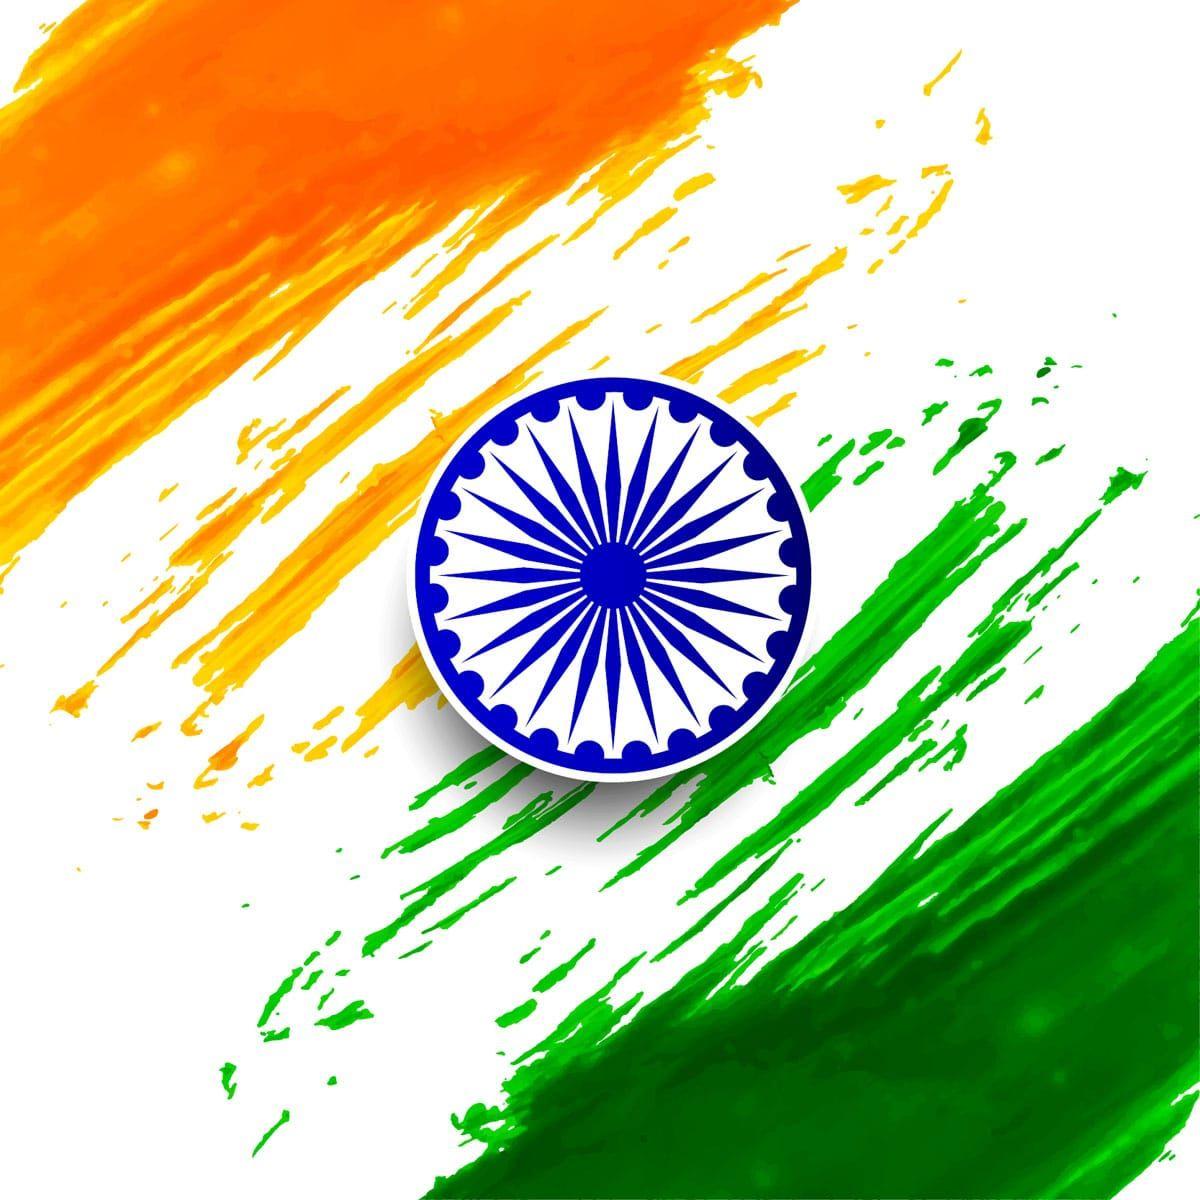 Indian Flag HD Image. Indian Flag. Indian flag